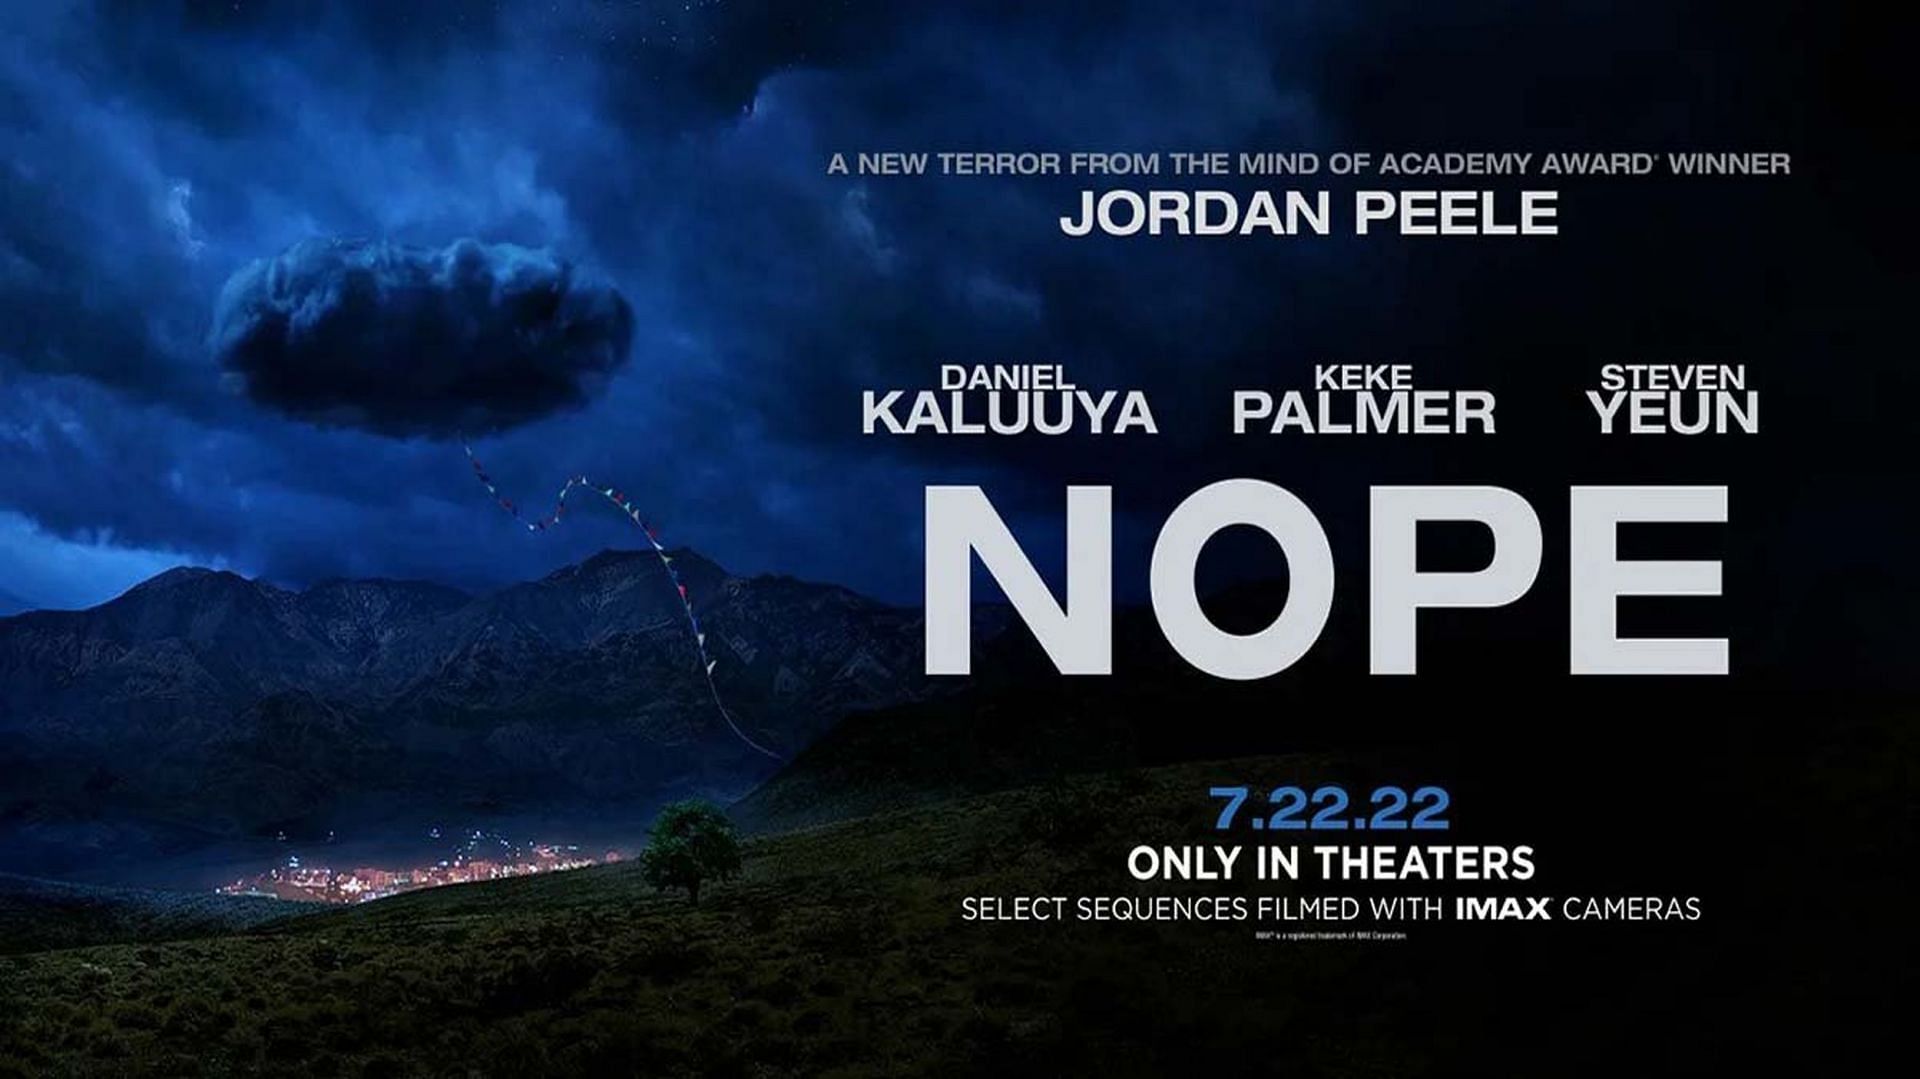 Nope by Jordan Peele releases on July 22, 2022 (Image via Universal)